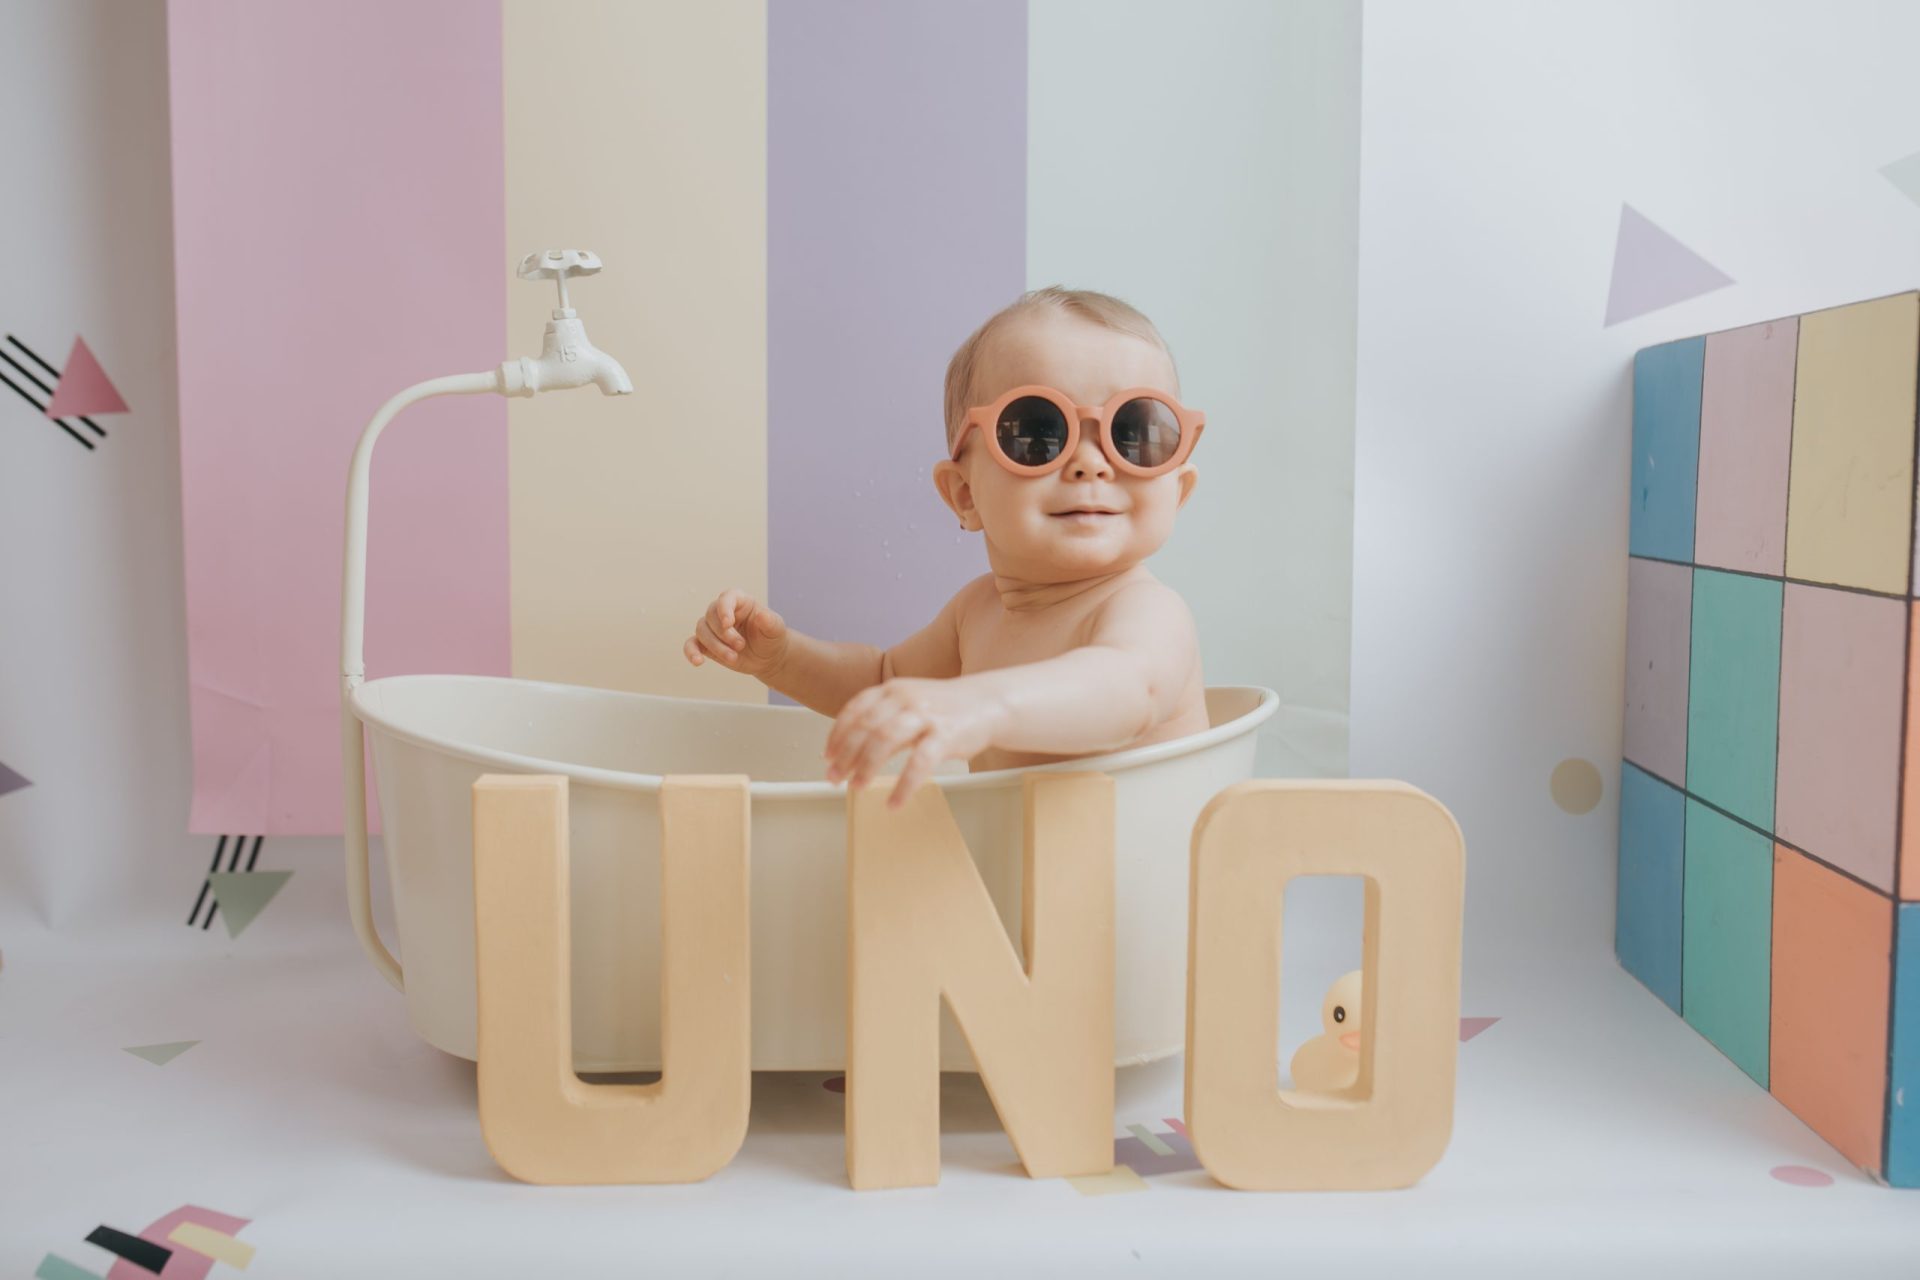 Bebé con gafas de sol dentro de una bañera de juguete